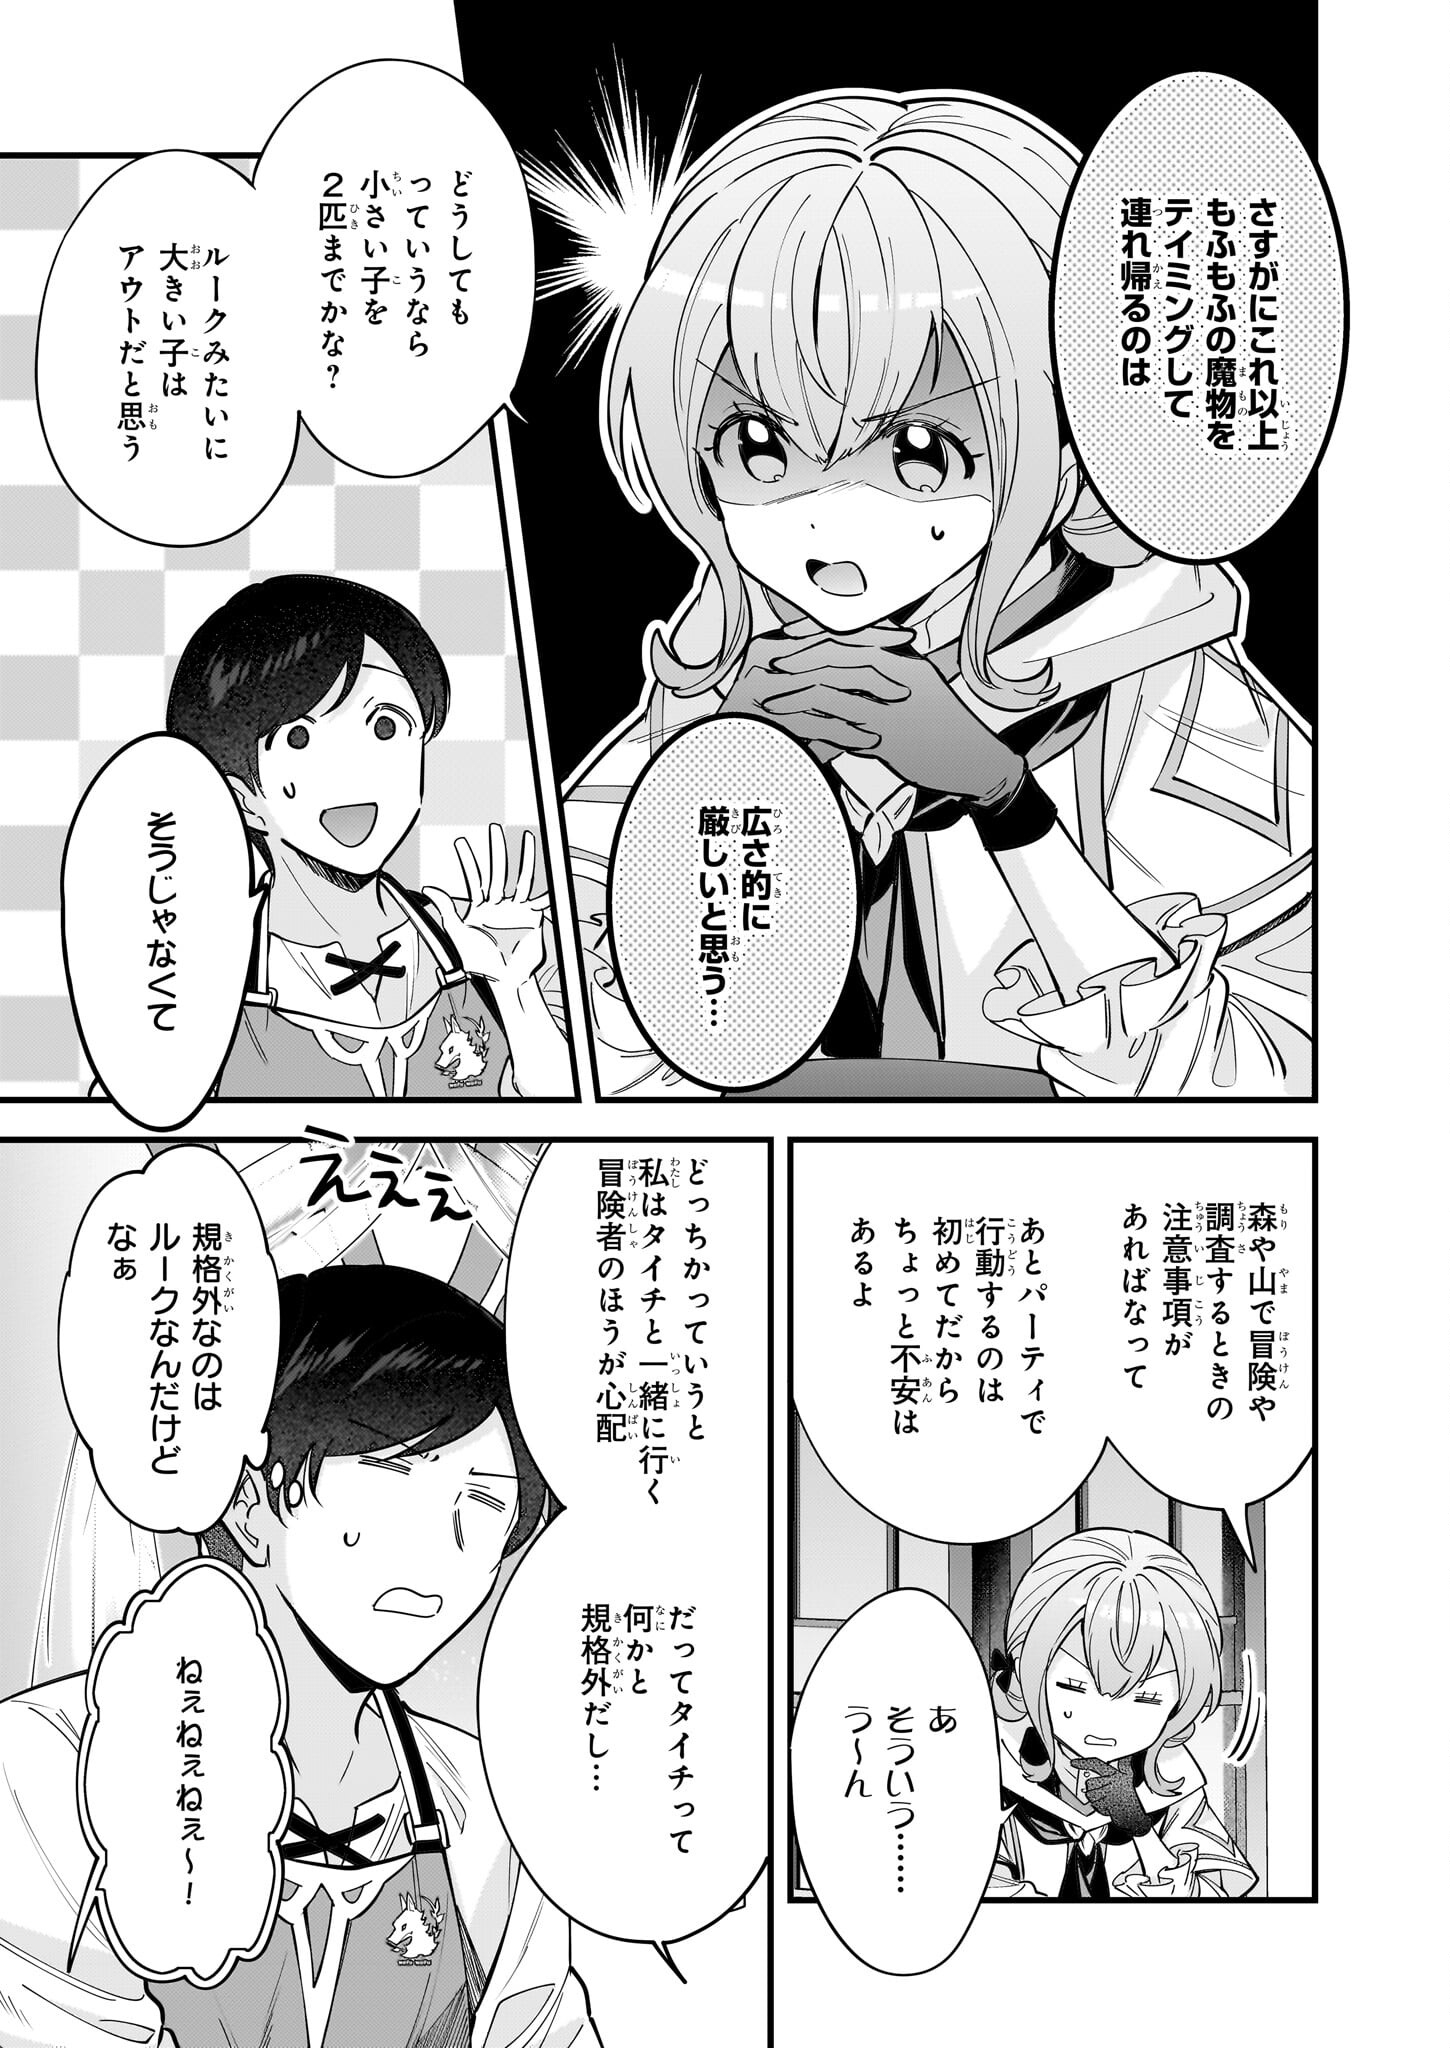 Isekai Mofumofu Cafe - Chapter 26 - Page 3